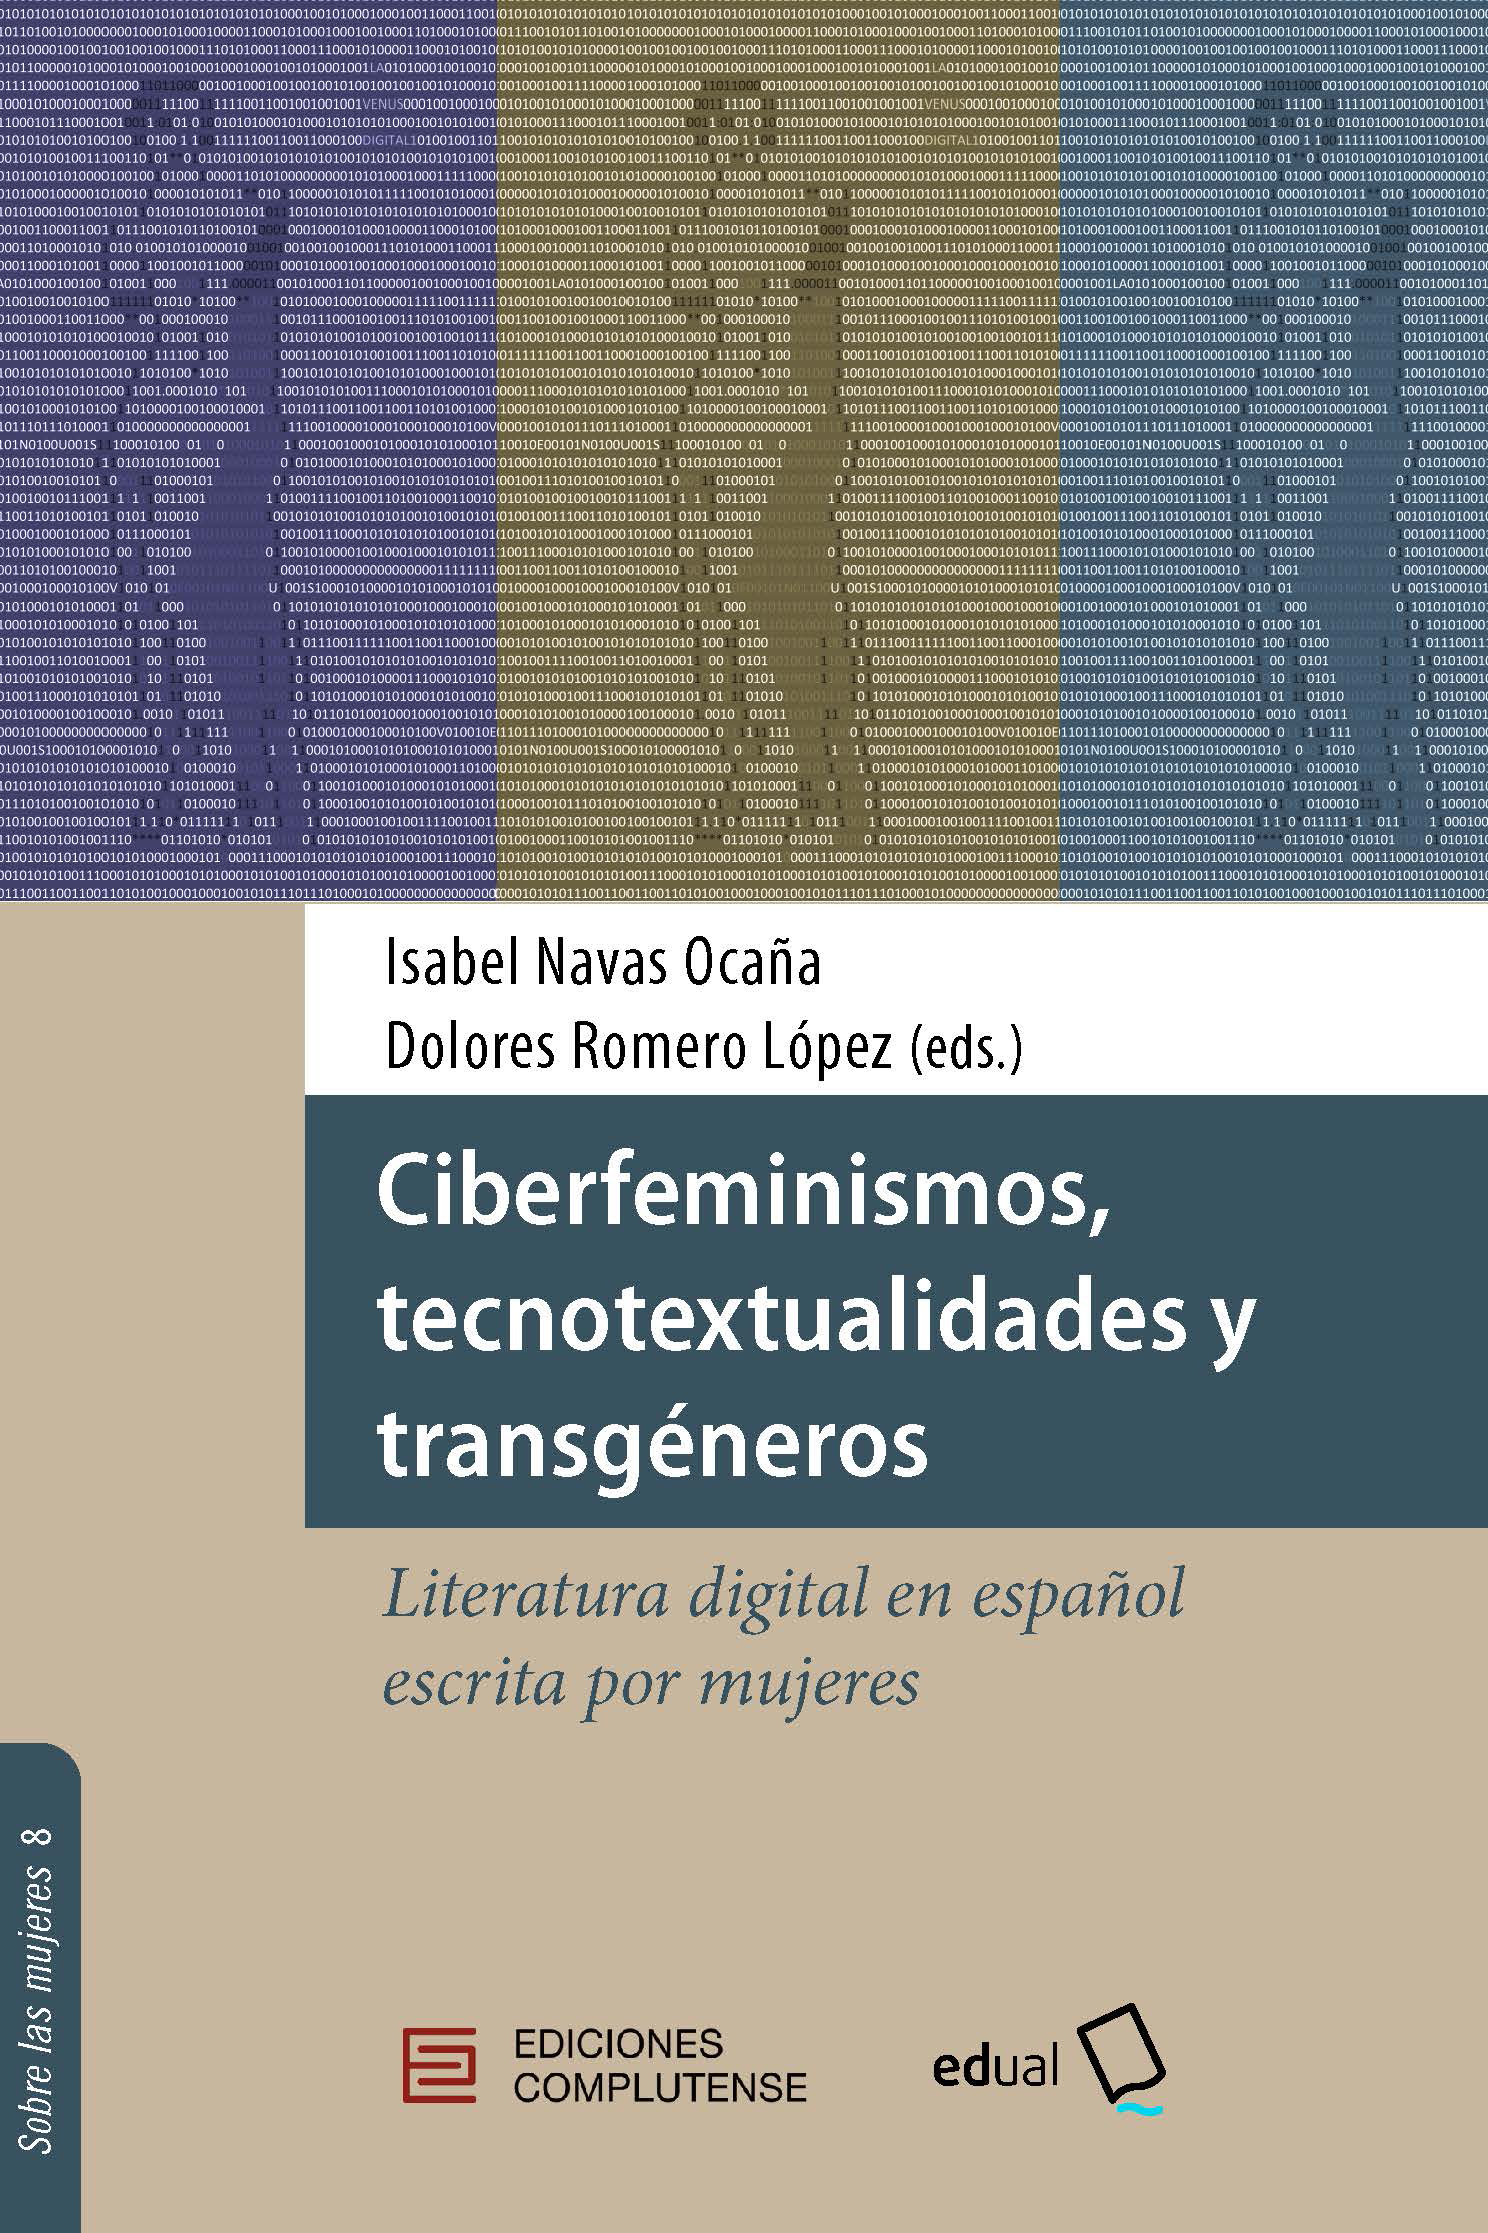 Ciberfeminismos, tecnotextualidades y transgéneros. Literatura digital en español escrita por mujeres